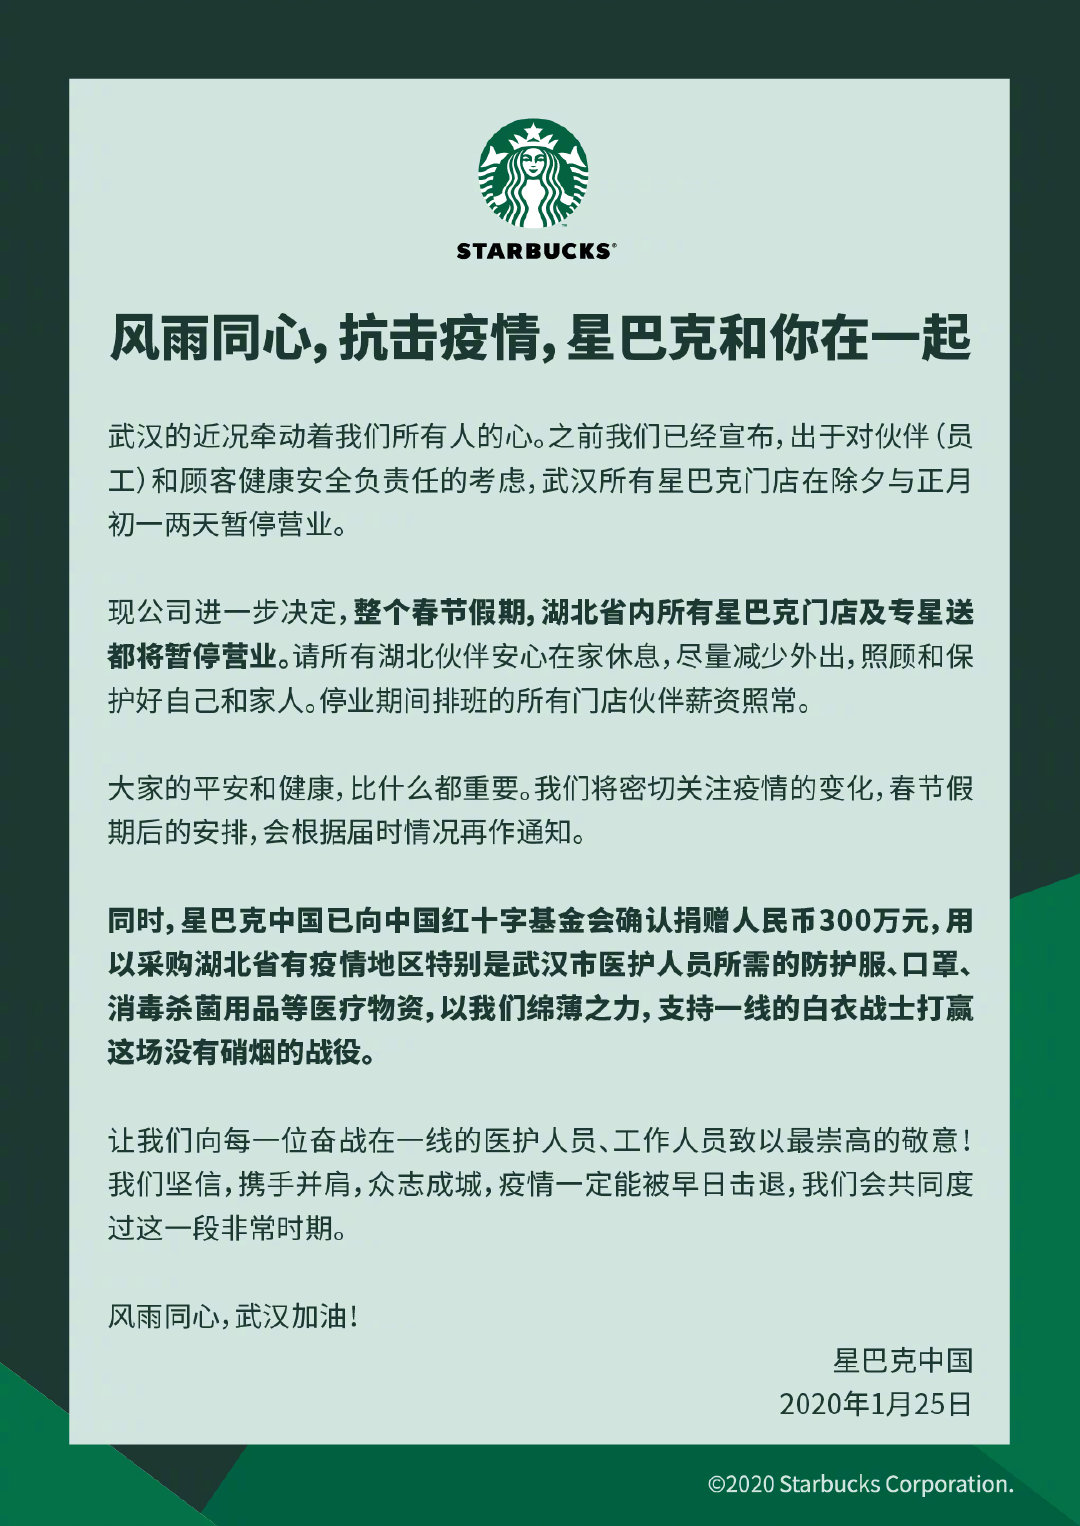 星巴克中国捐款300万元驰援武汉 880箱新品支援前线医院